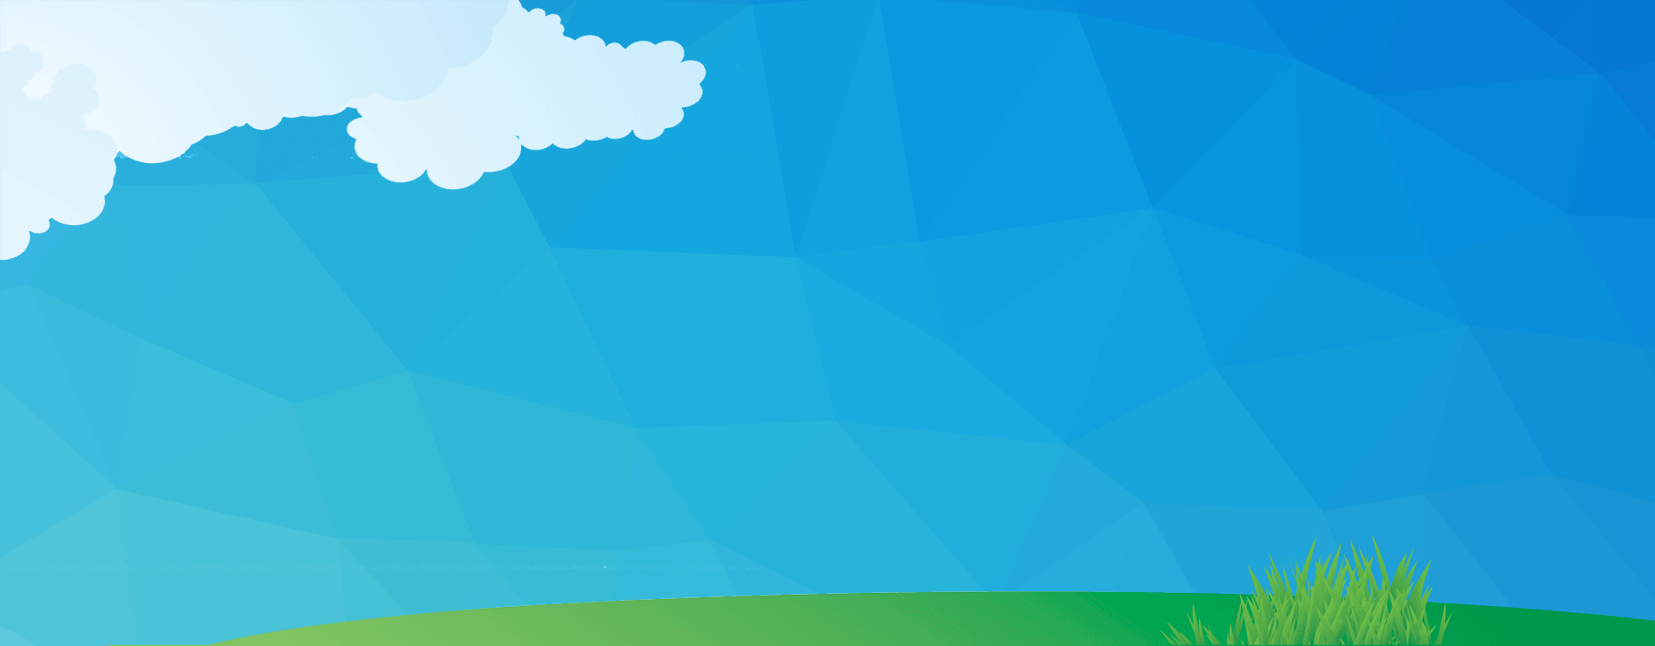 banner-cloud-grass-bkg2